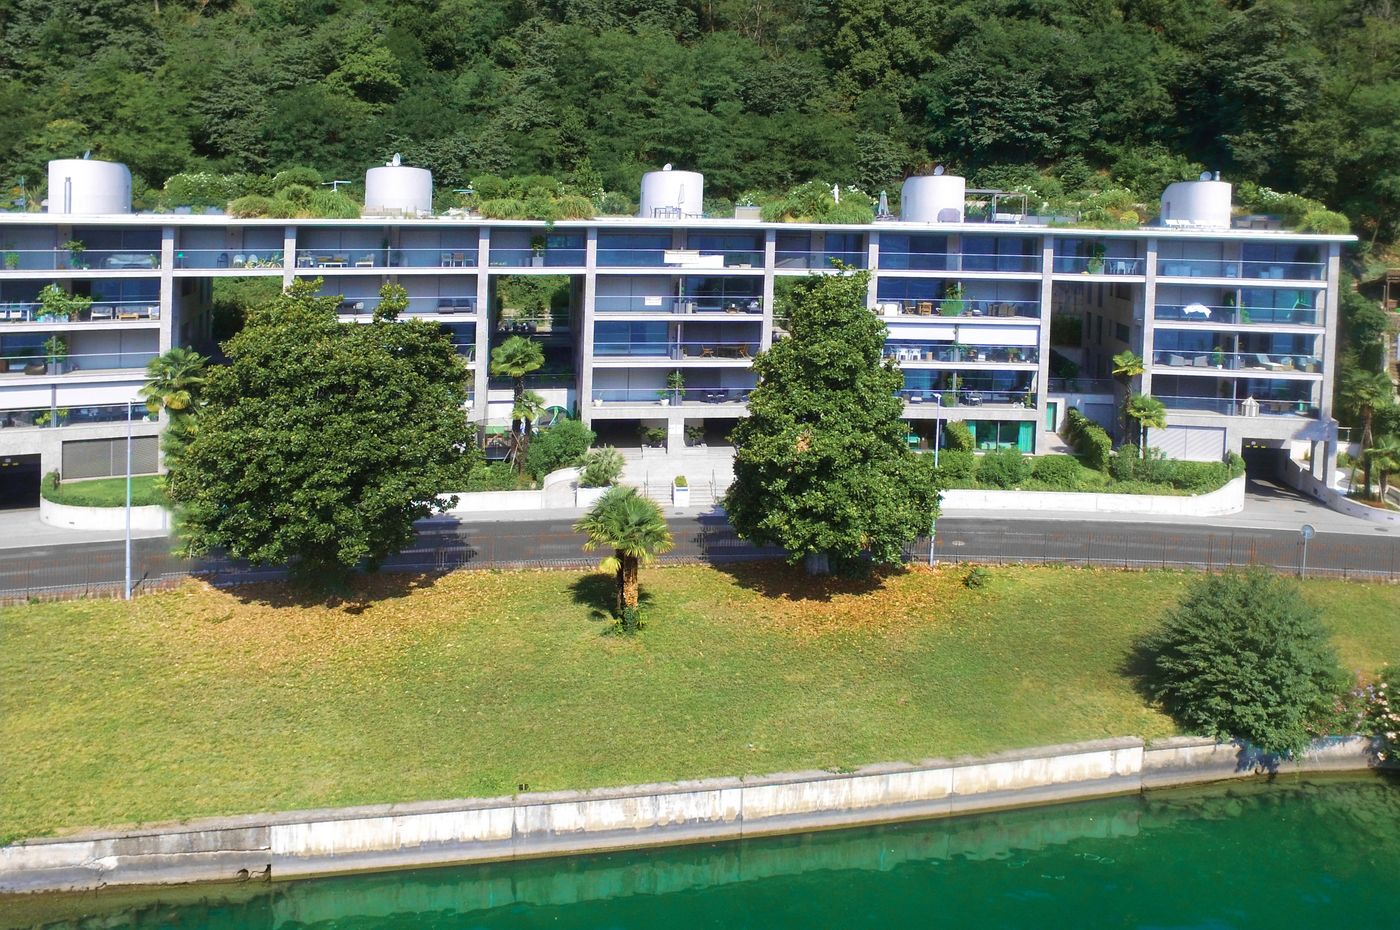 Четырехкомнатная Квартира с Видом на Озеро Лугано в Мелиде